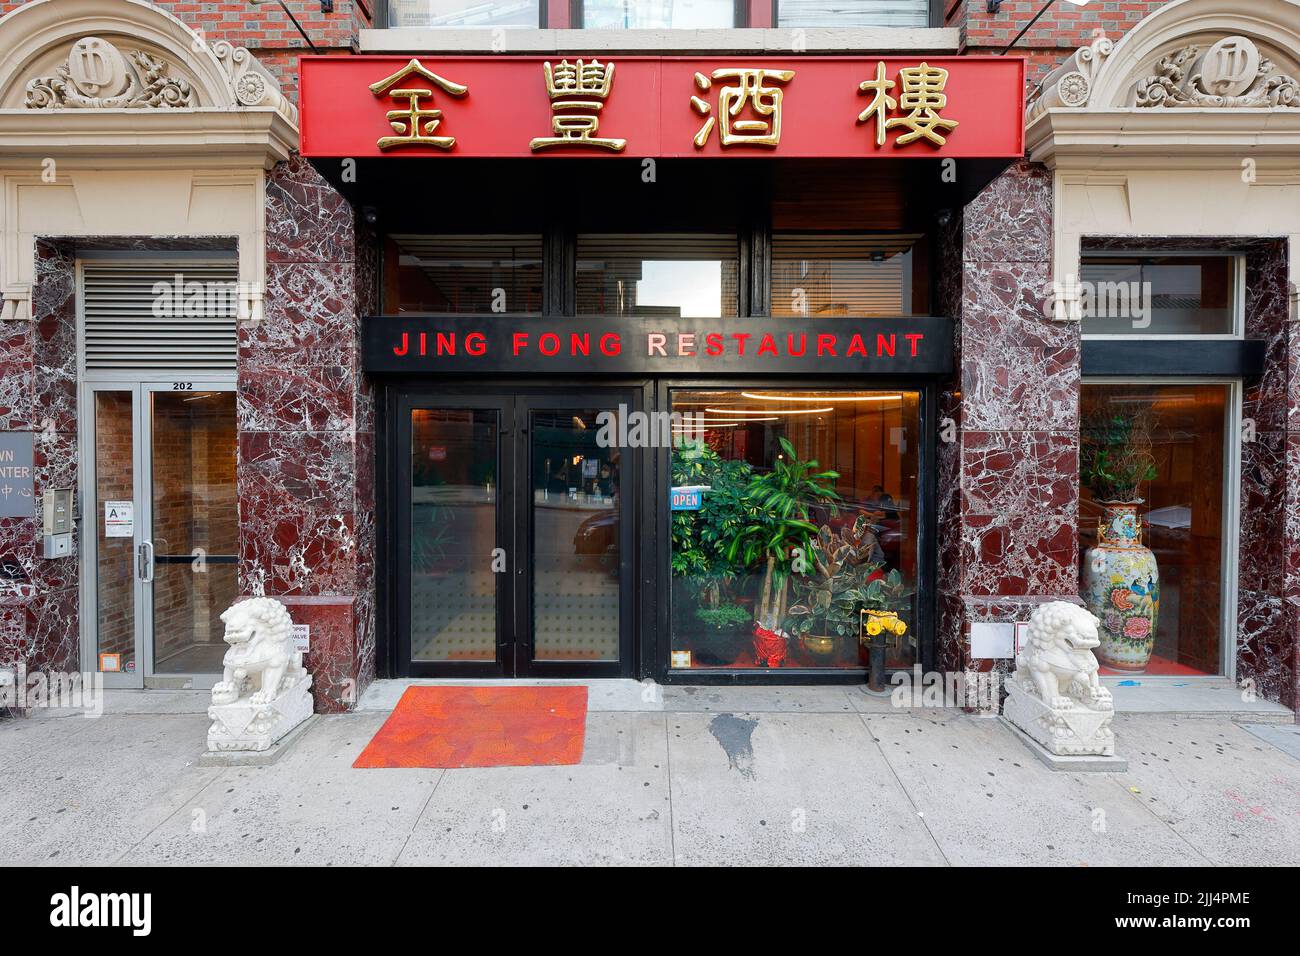 Jing Fong Restaurant 金豐酒樓, 202 Center St, New York, NY. Außenfassade eines chinesischen Dim Sum Restaurants in Manhattan, Chinatown. Stockfoto